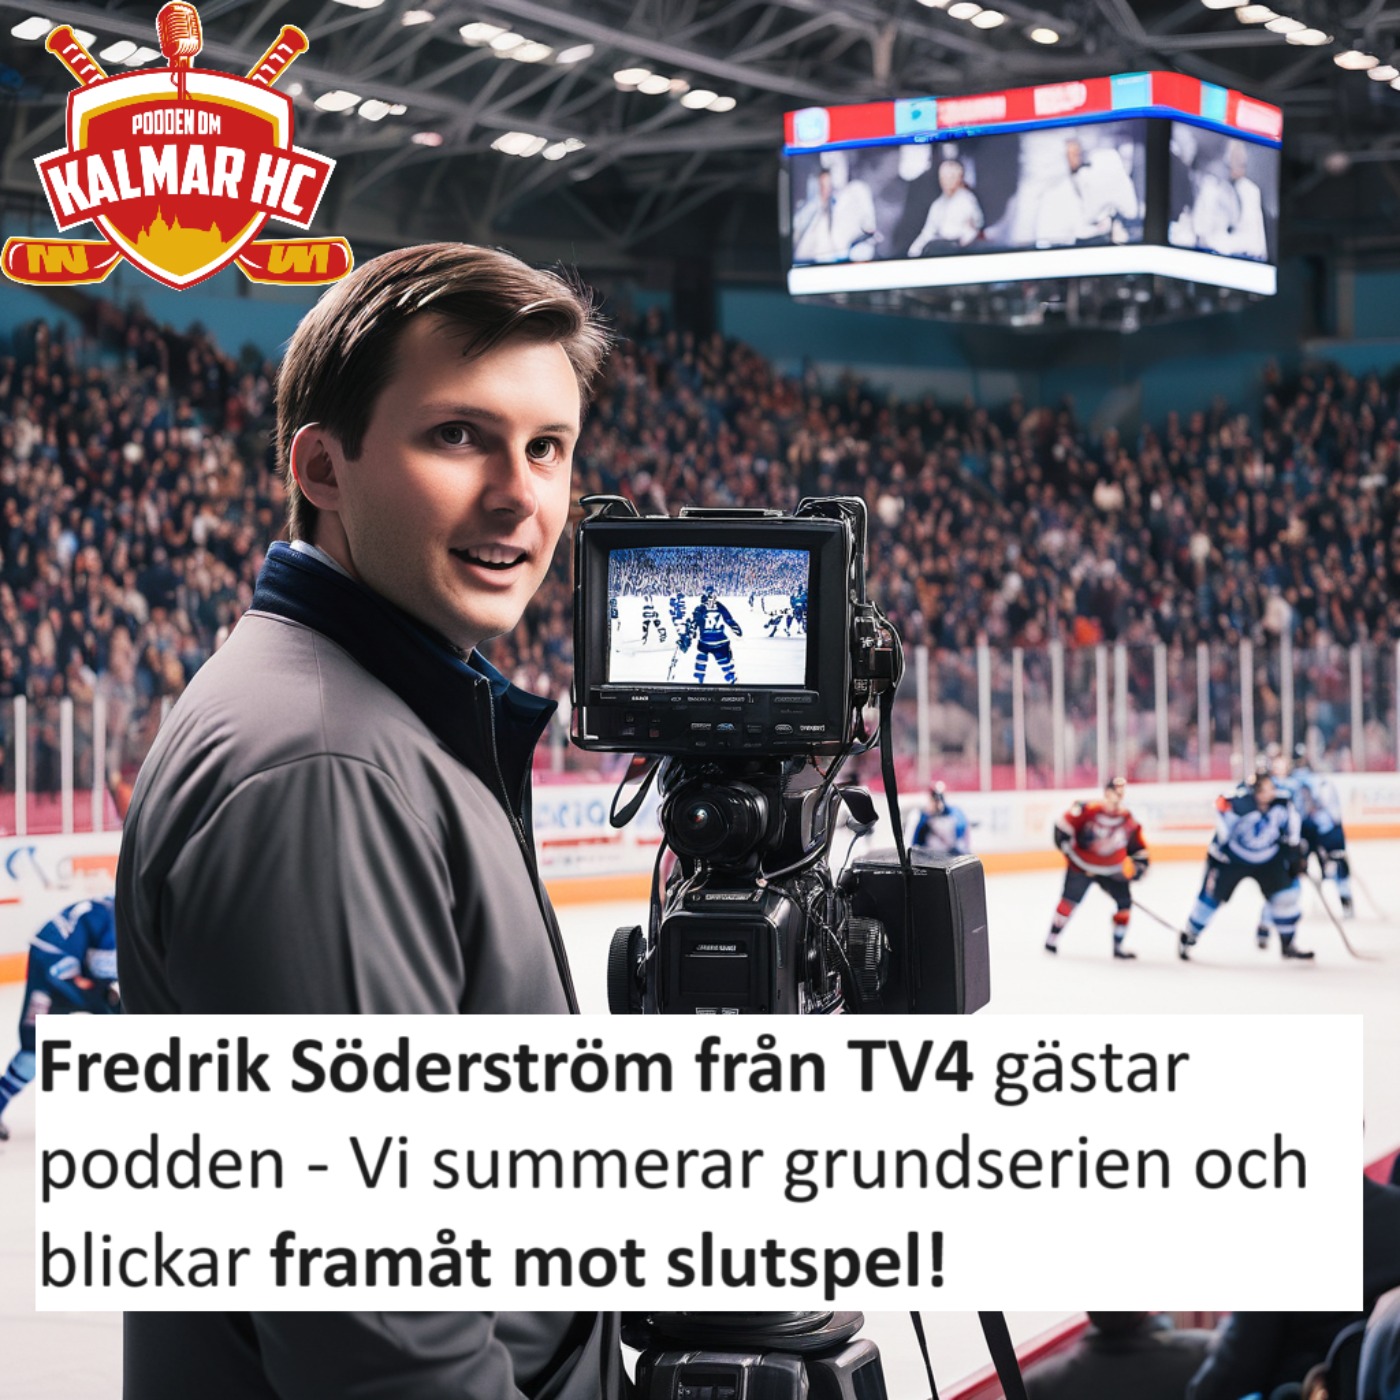 cover art for Fredrik Söderström från TV4 gästar podden - Vi summerar grundserien och blickar framåt mot slutspel!